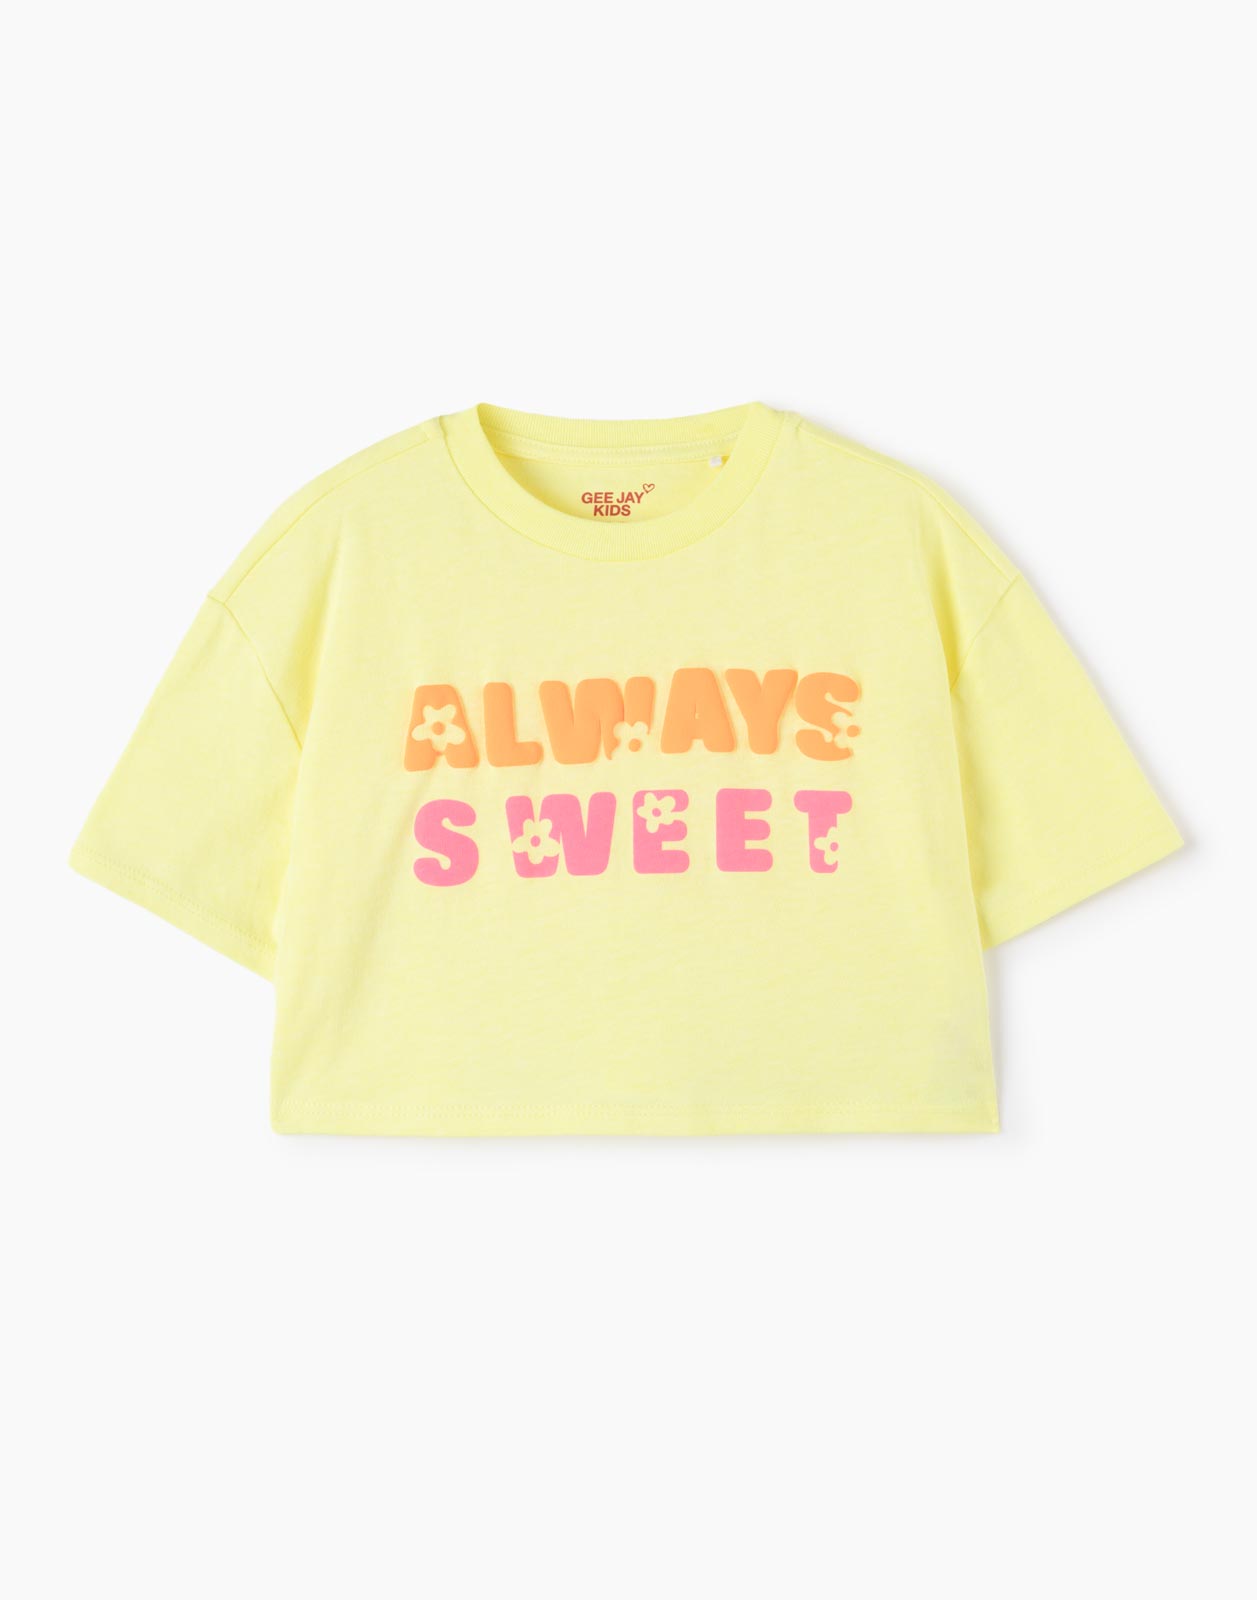 Жёлтая укороченная футболка Oversize с надписью для девочки 3-4г/104